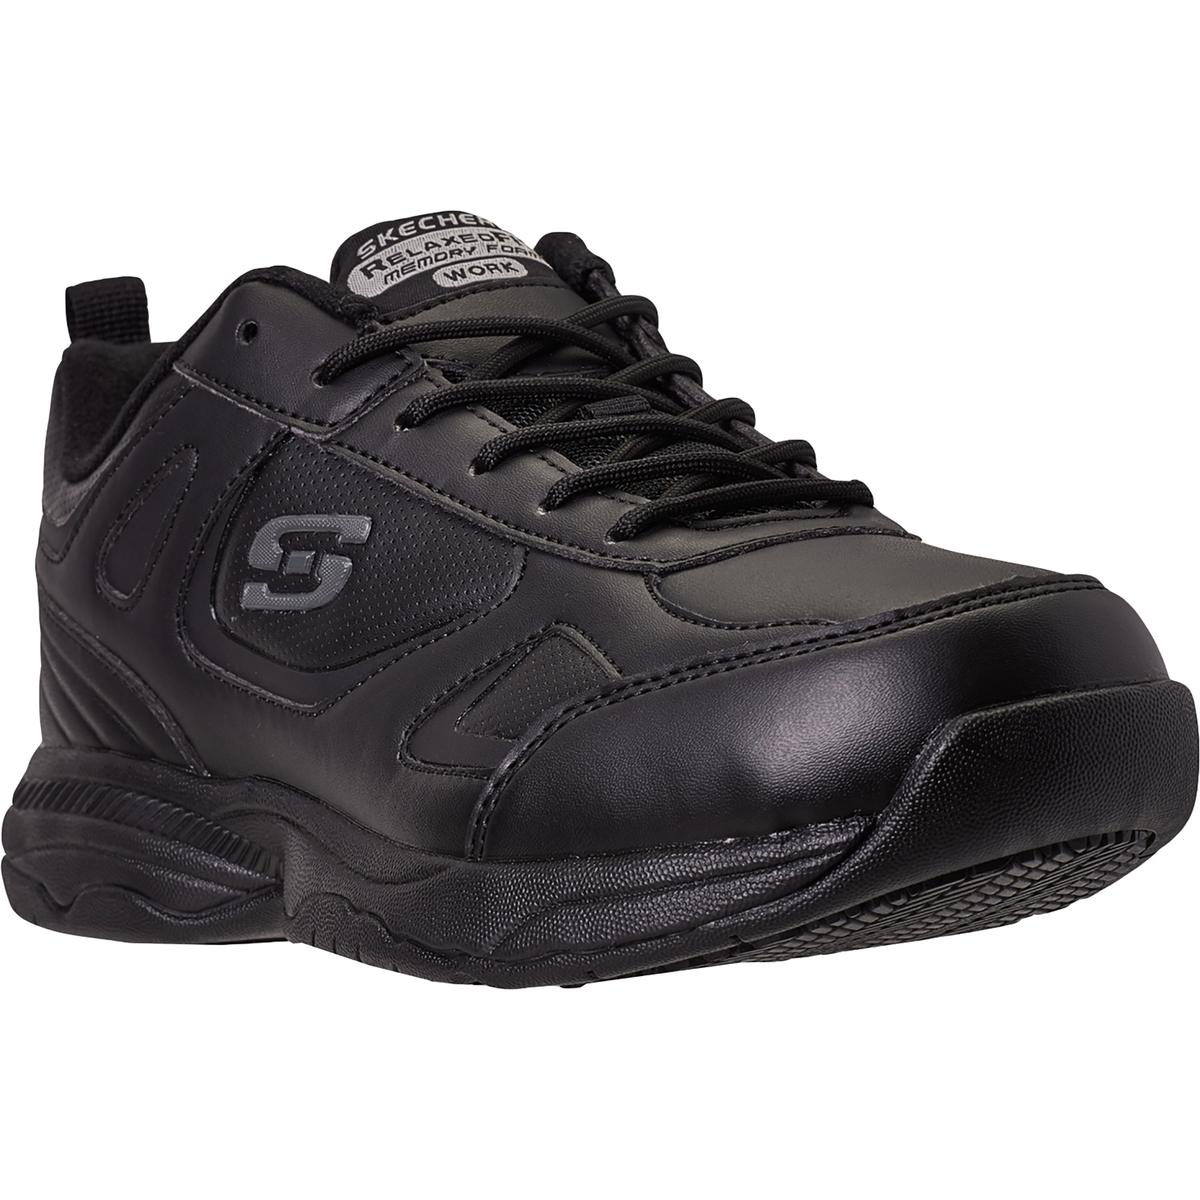 Skechers Mens Dighton Black Work Shoes Sneakers 10.5 Medium (D) BHFO